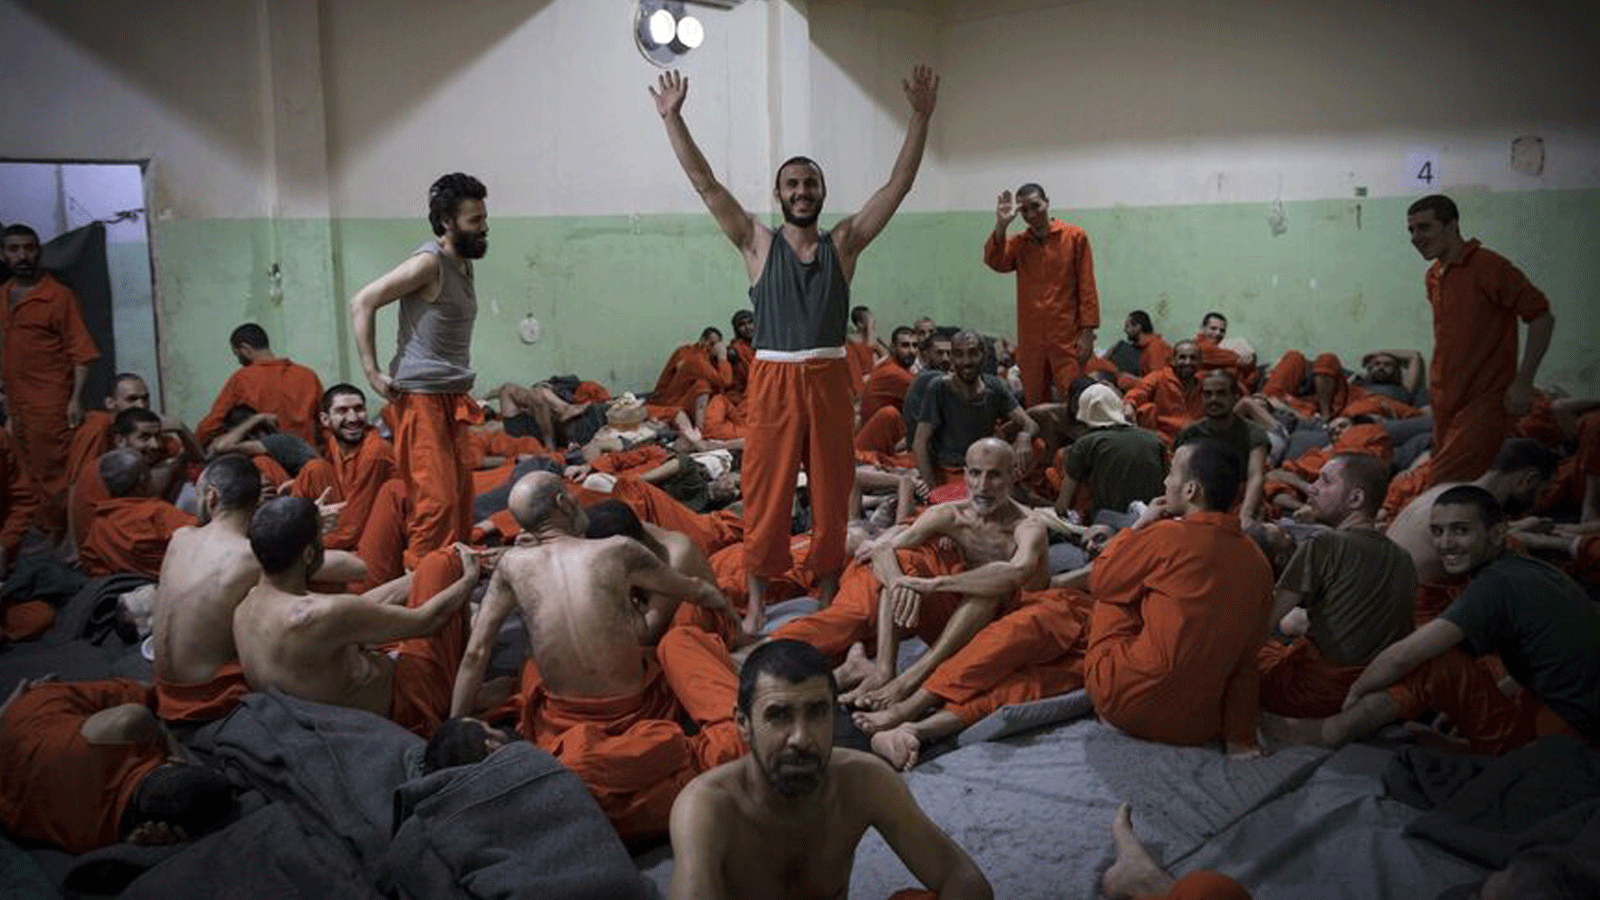 رجال يُشتبه في انتمائهم لتنظيم الدولة الإسلامية يعتقلون في زنزانة في مدينة الحسكة شمال شرق سوريا. 26 تشرين الأول/ أكتوبر 2019.